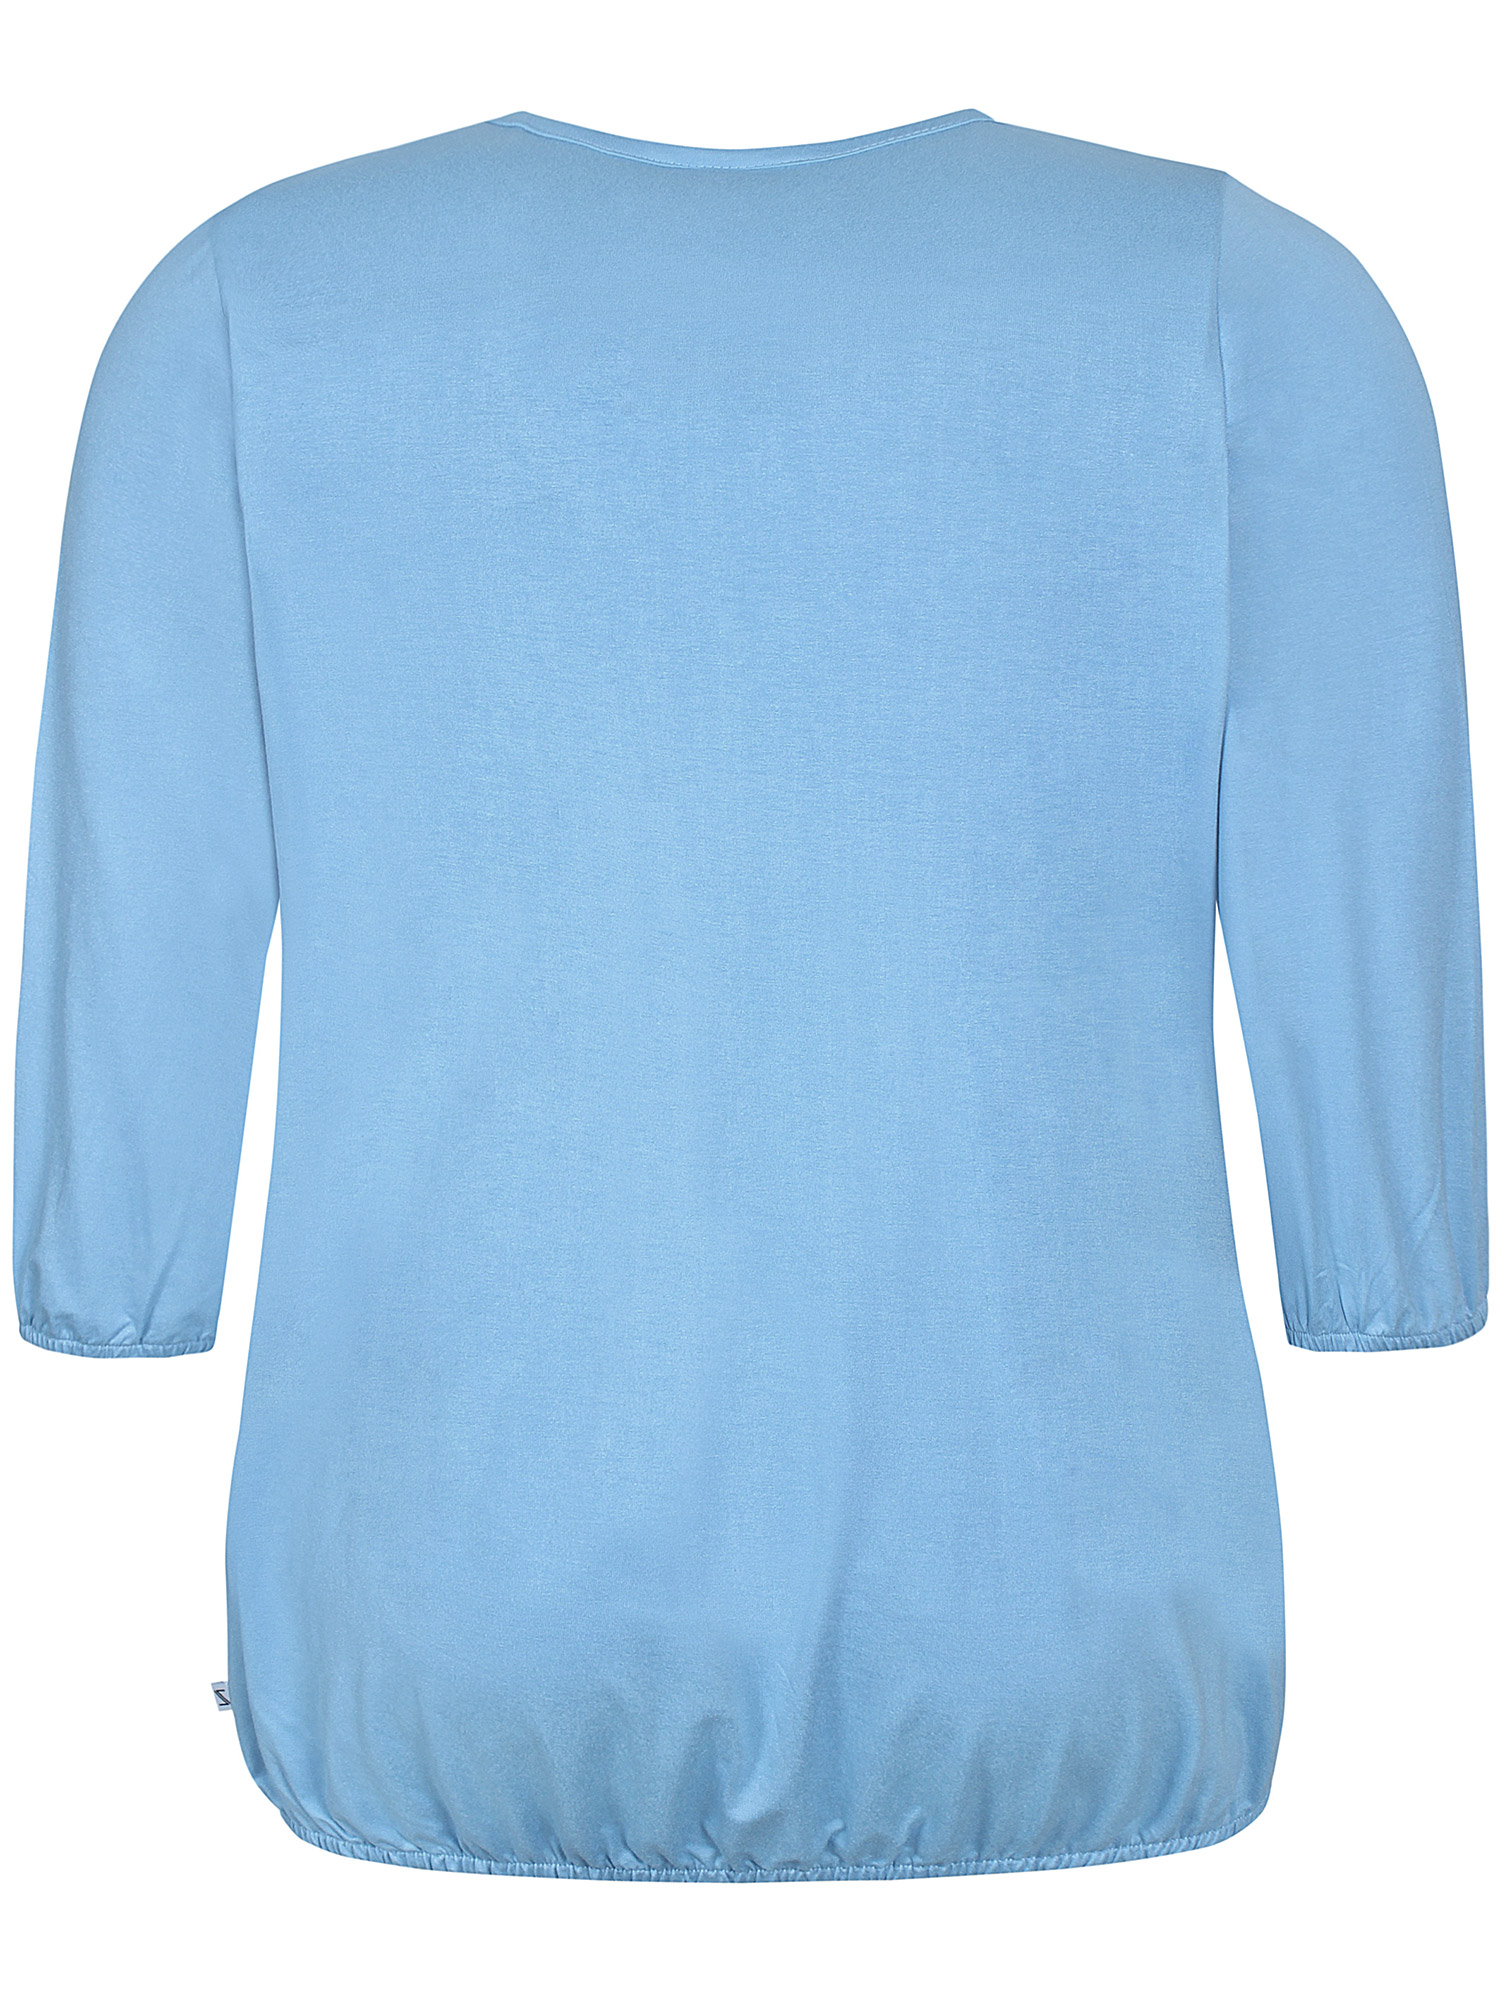 GIRO - Lyseblå jersey bluse med elastikkant fra Zhenzi